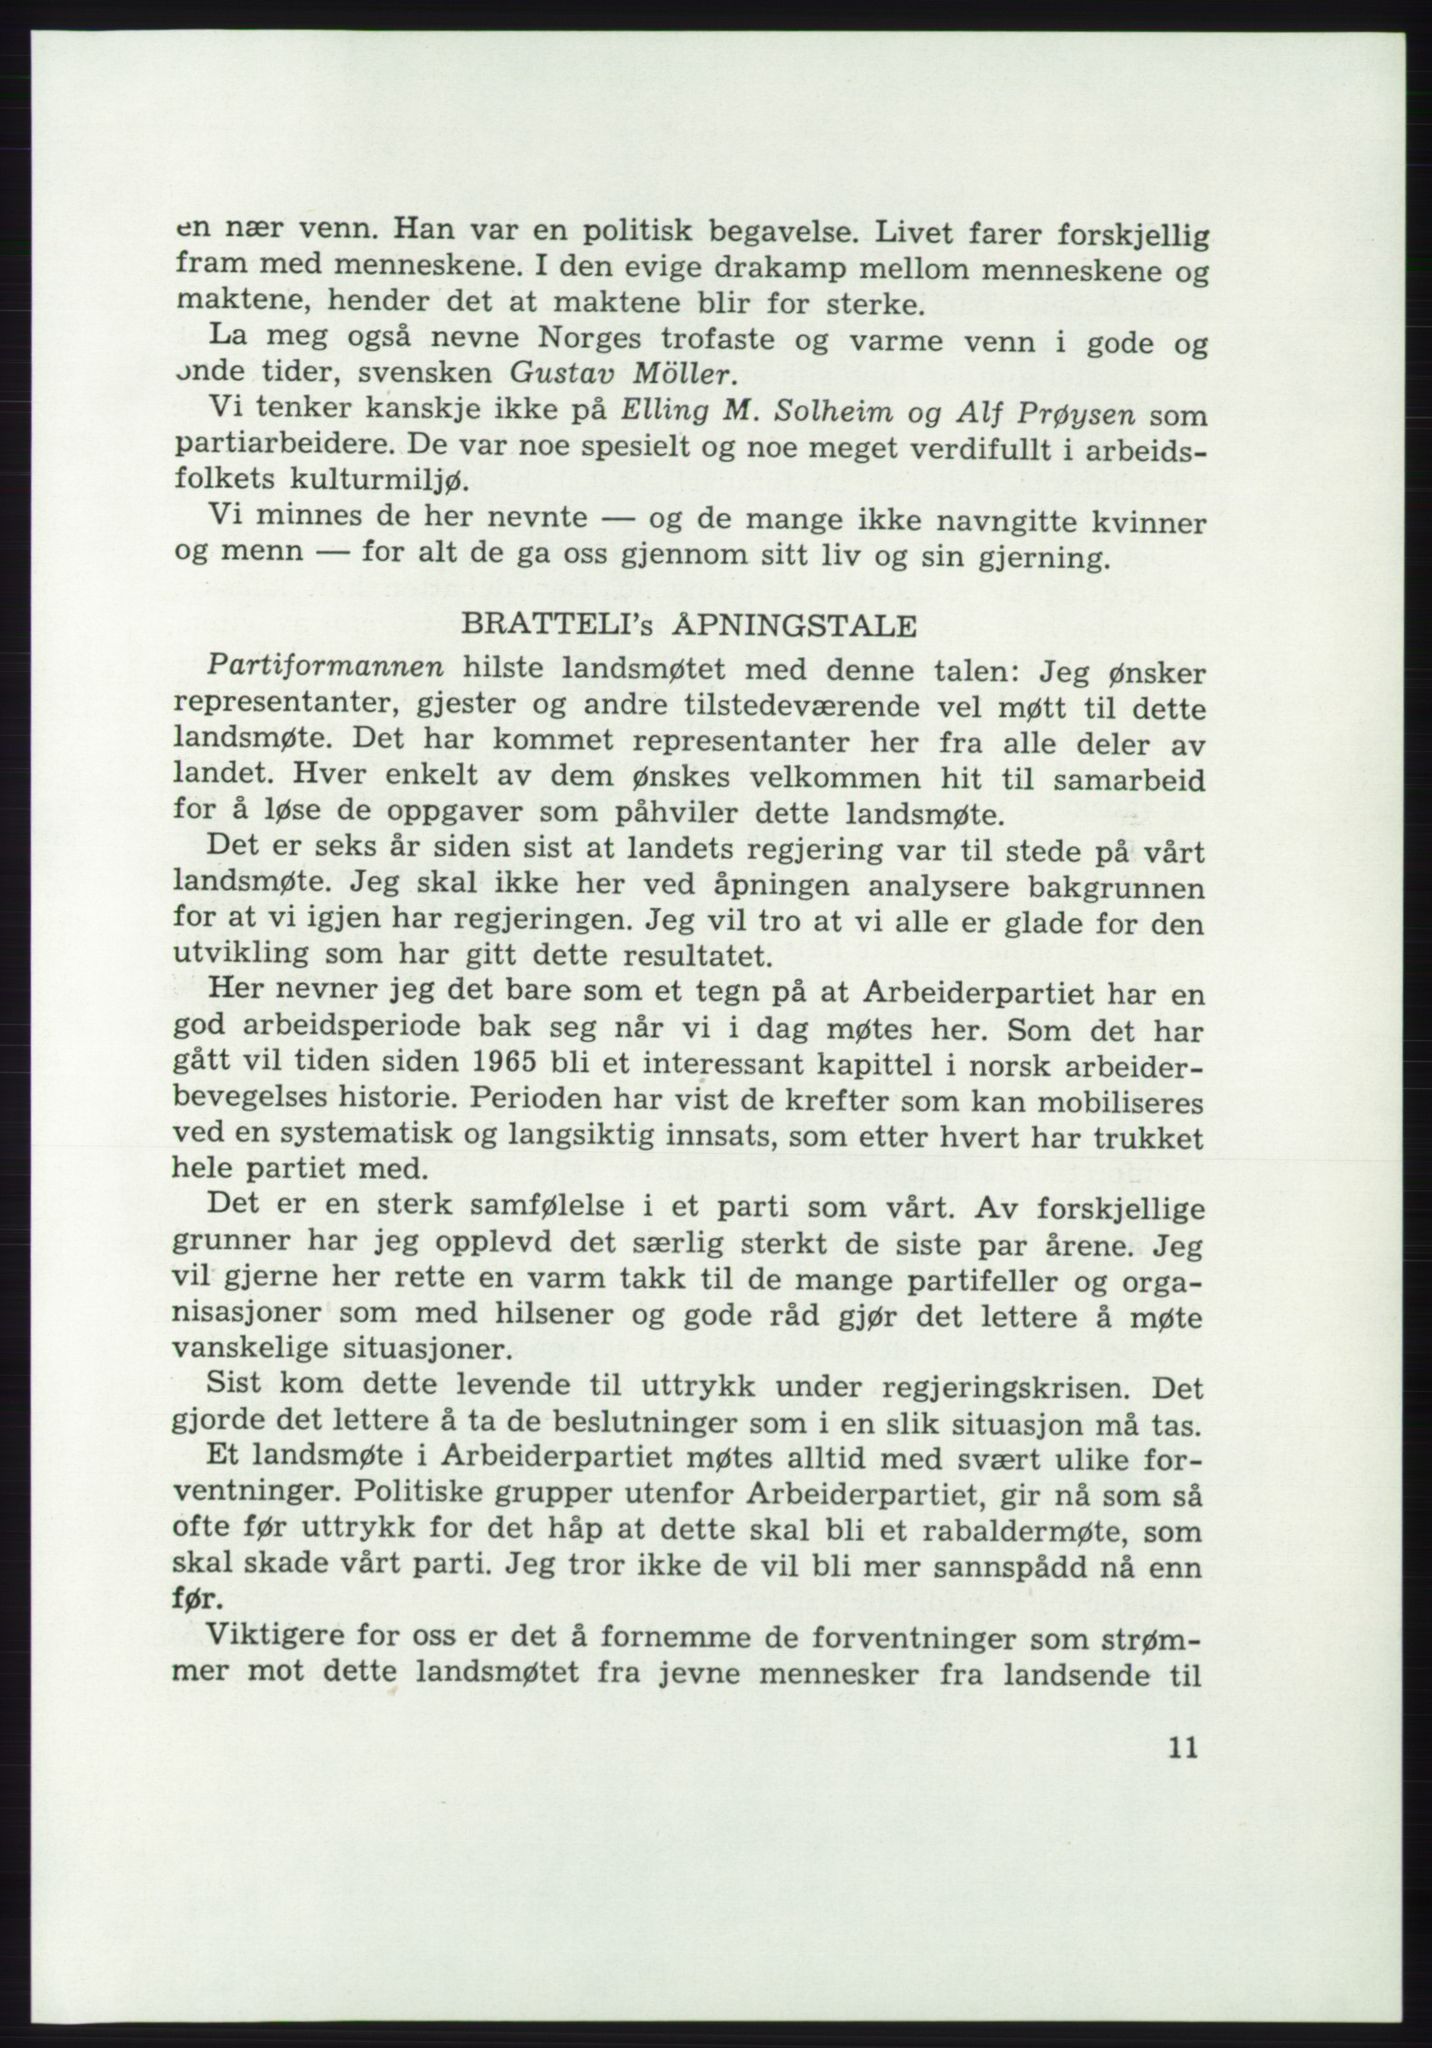 Det norske Arbeiderparti - publikasjoner, AAB/-/-/-: Protokoll over forhandlingene på det 43. ordinære landsmøte 9.-11. mai 1971 i Oslo, 1971, p. 11